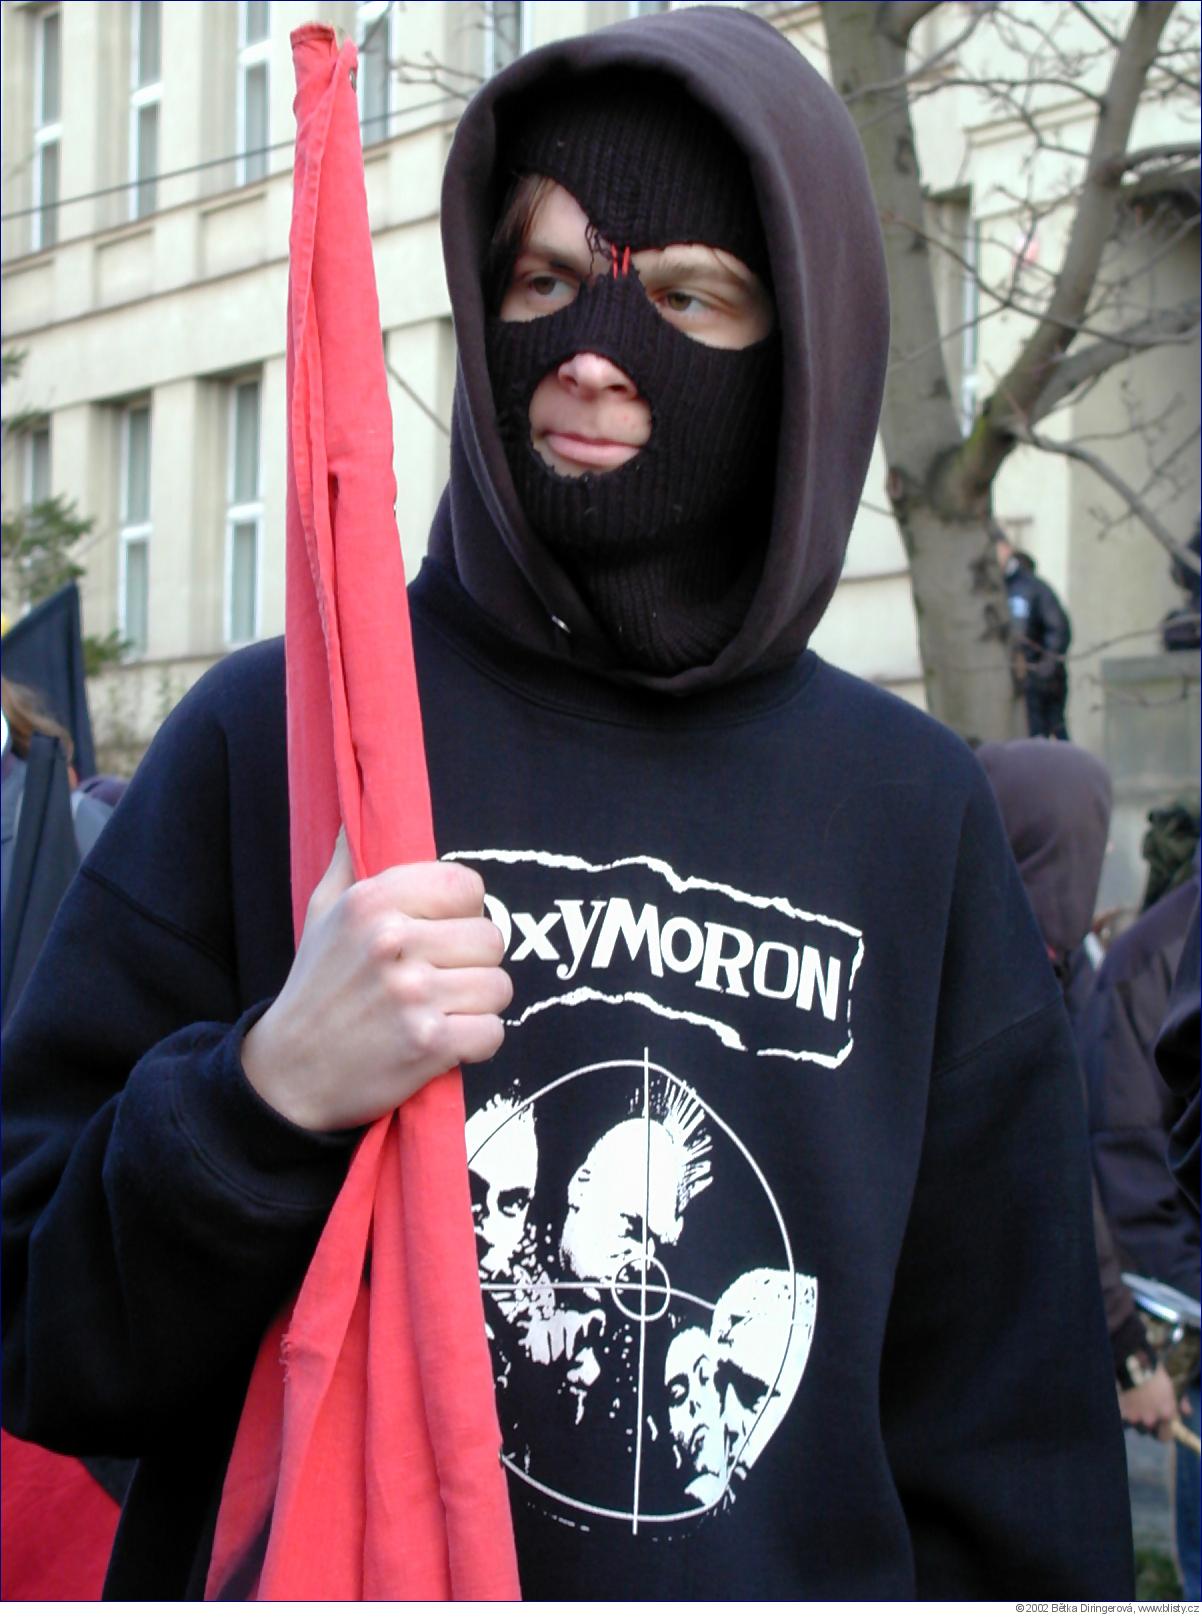 A takhle, dceruško, vypadá anarchista... FOTOGALERIE z demonstrace k výročí 17. 11., proti NATO a kapitalismu